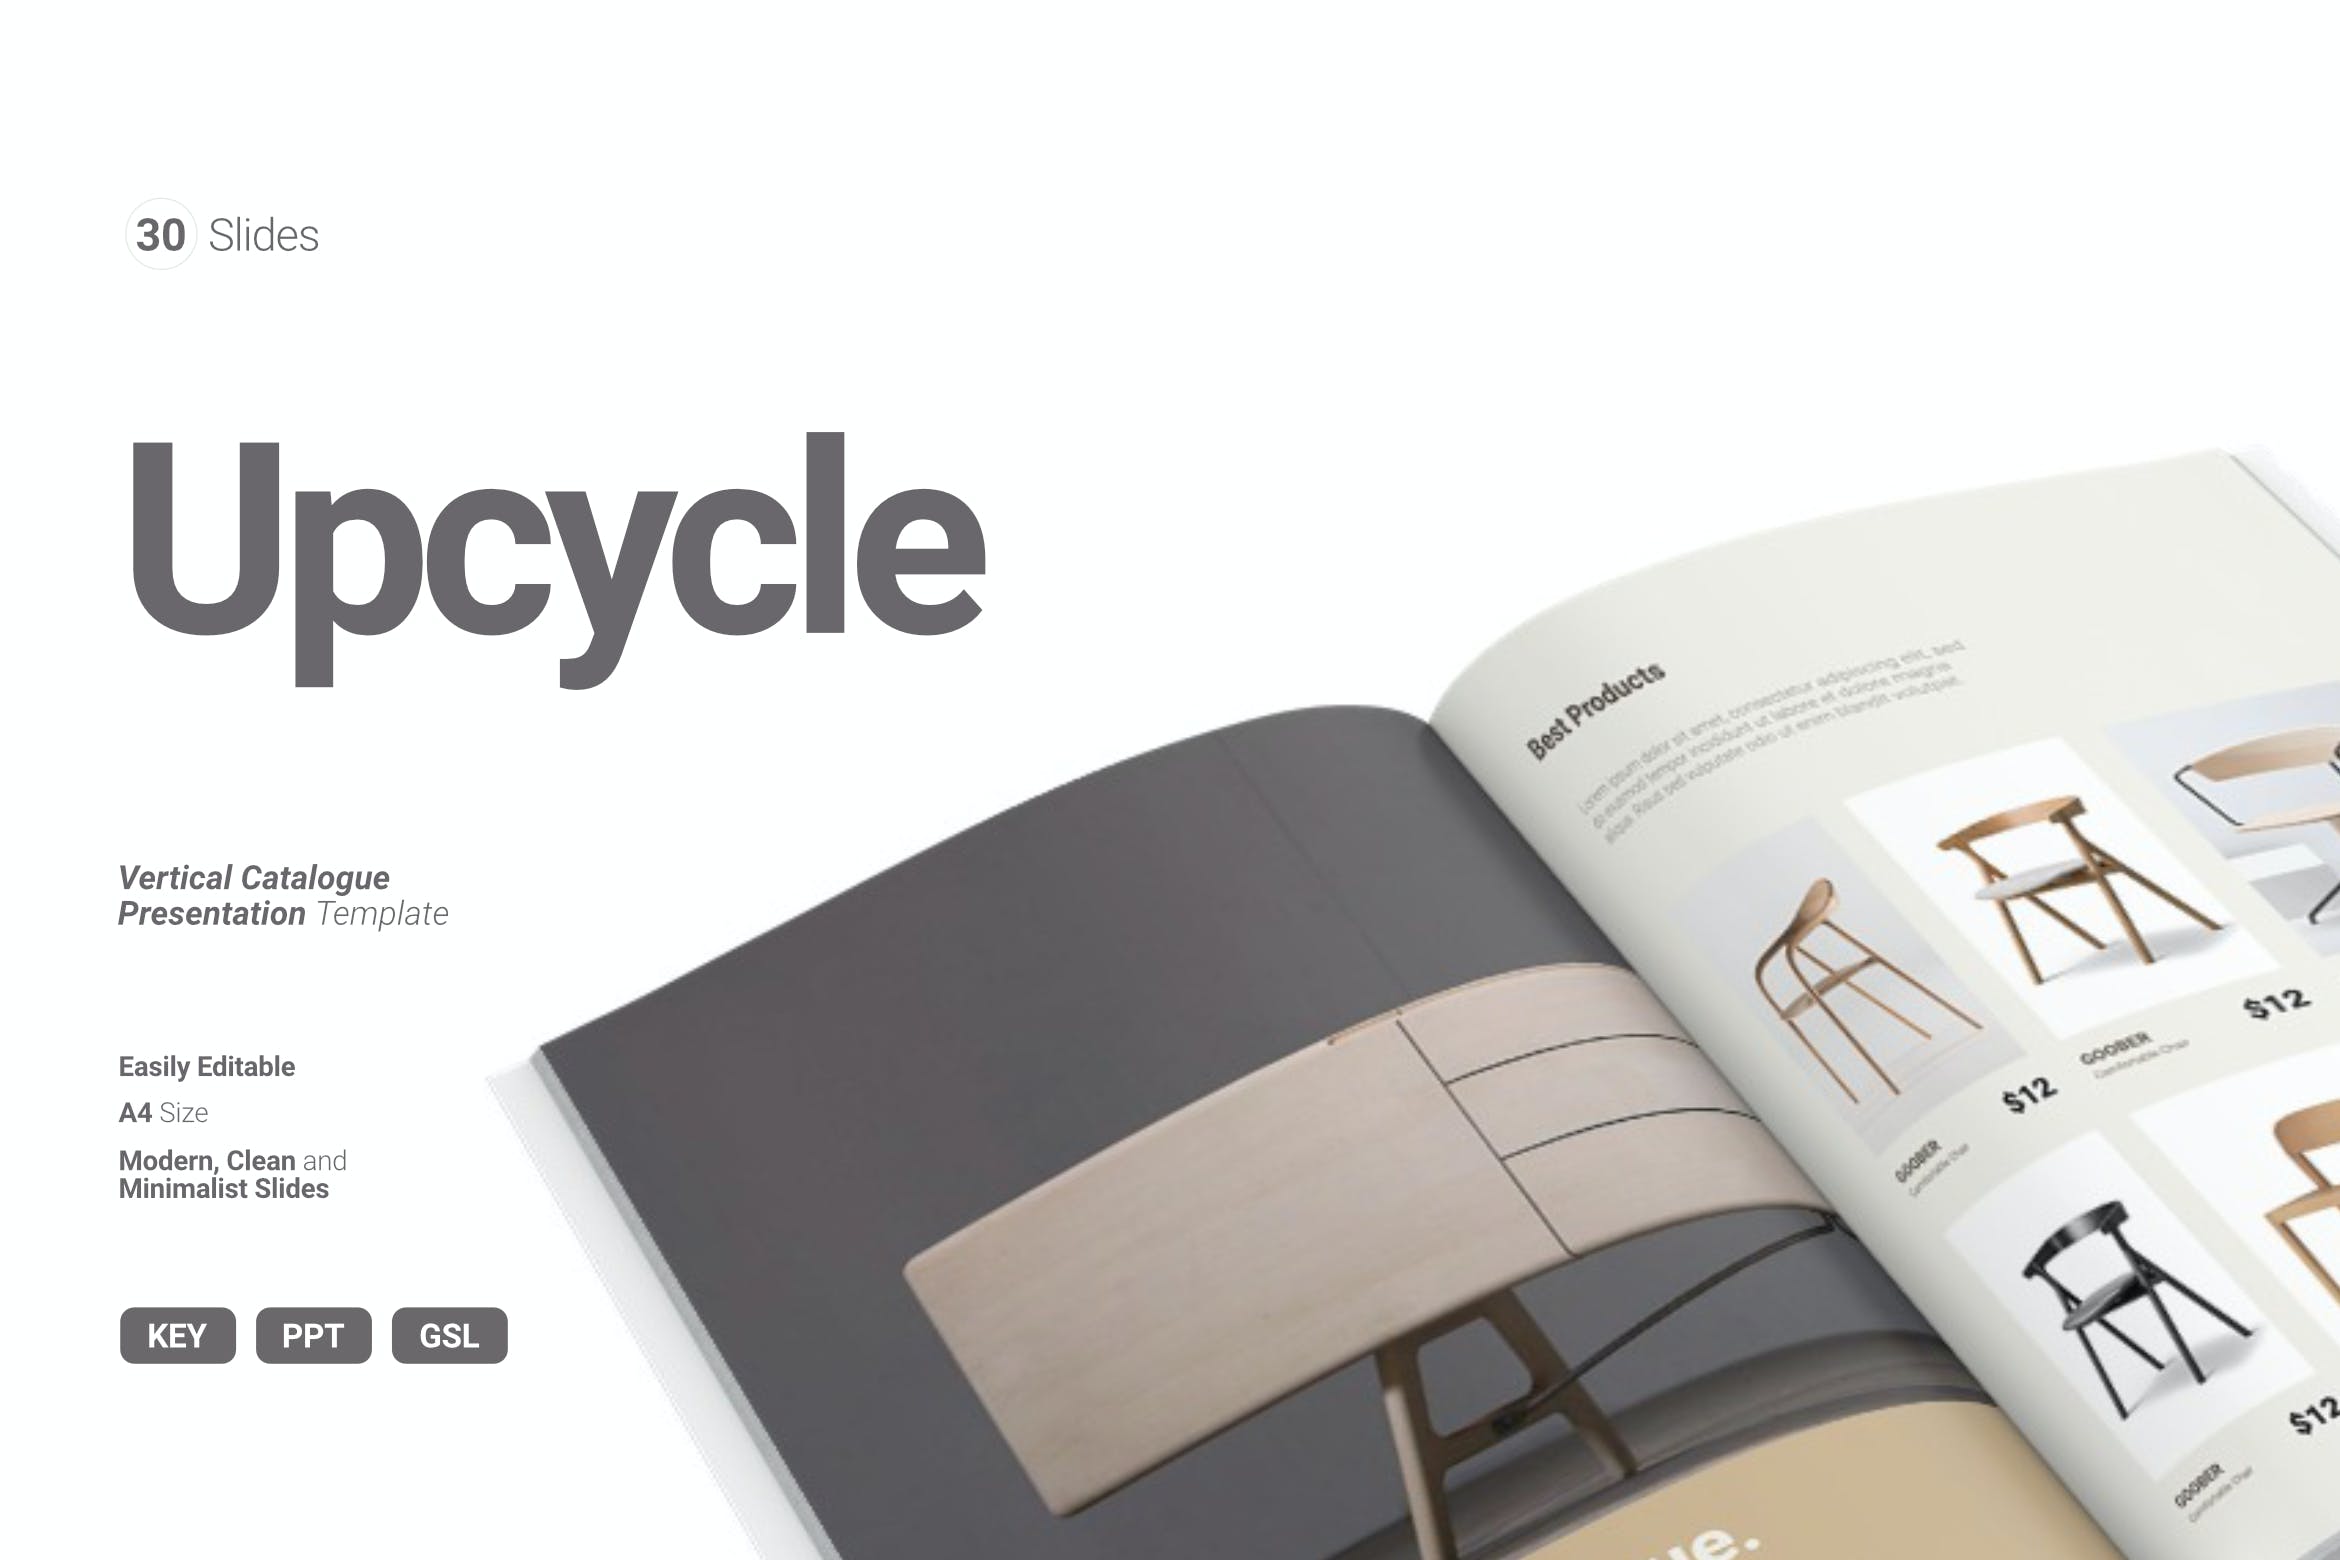 4102 竖版家居家具产品画册宣传册目录展示设计Keynote模板 Upcycle – Vertical Catalogue Presentation@GOOODME.COM